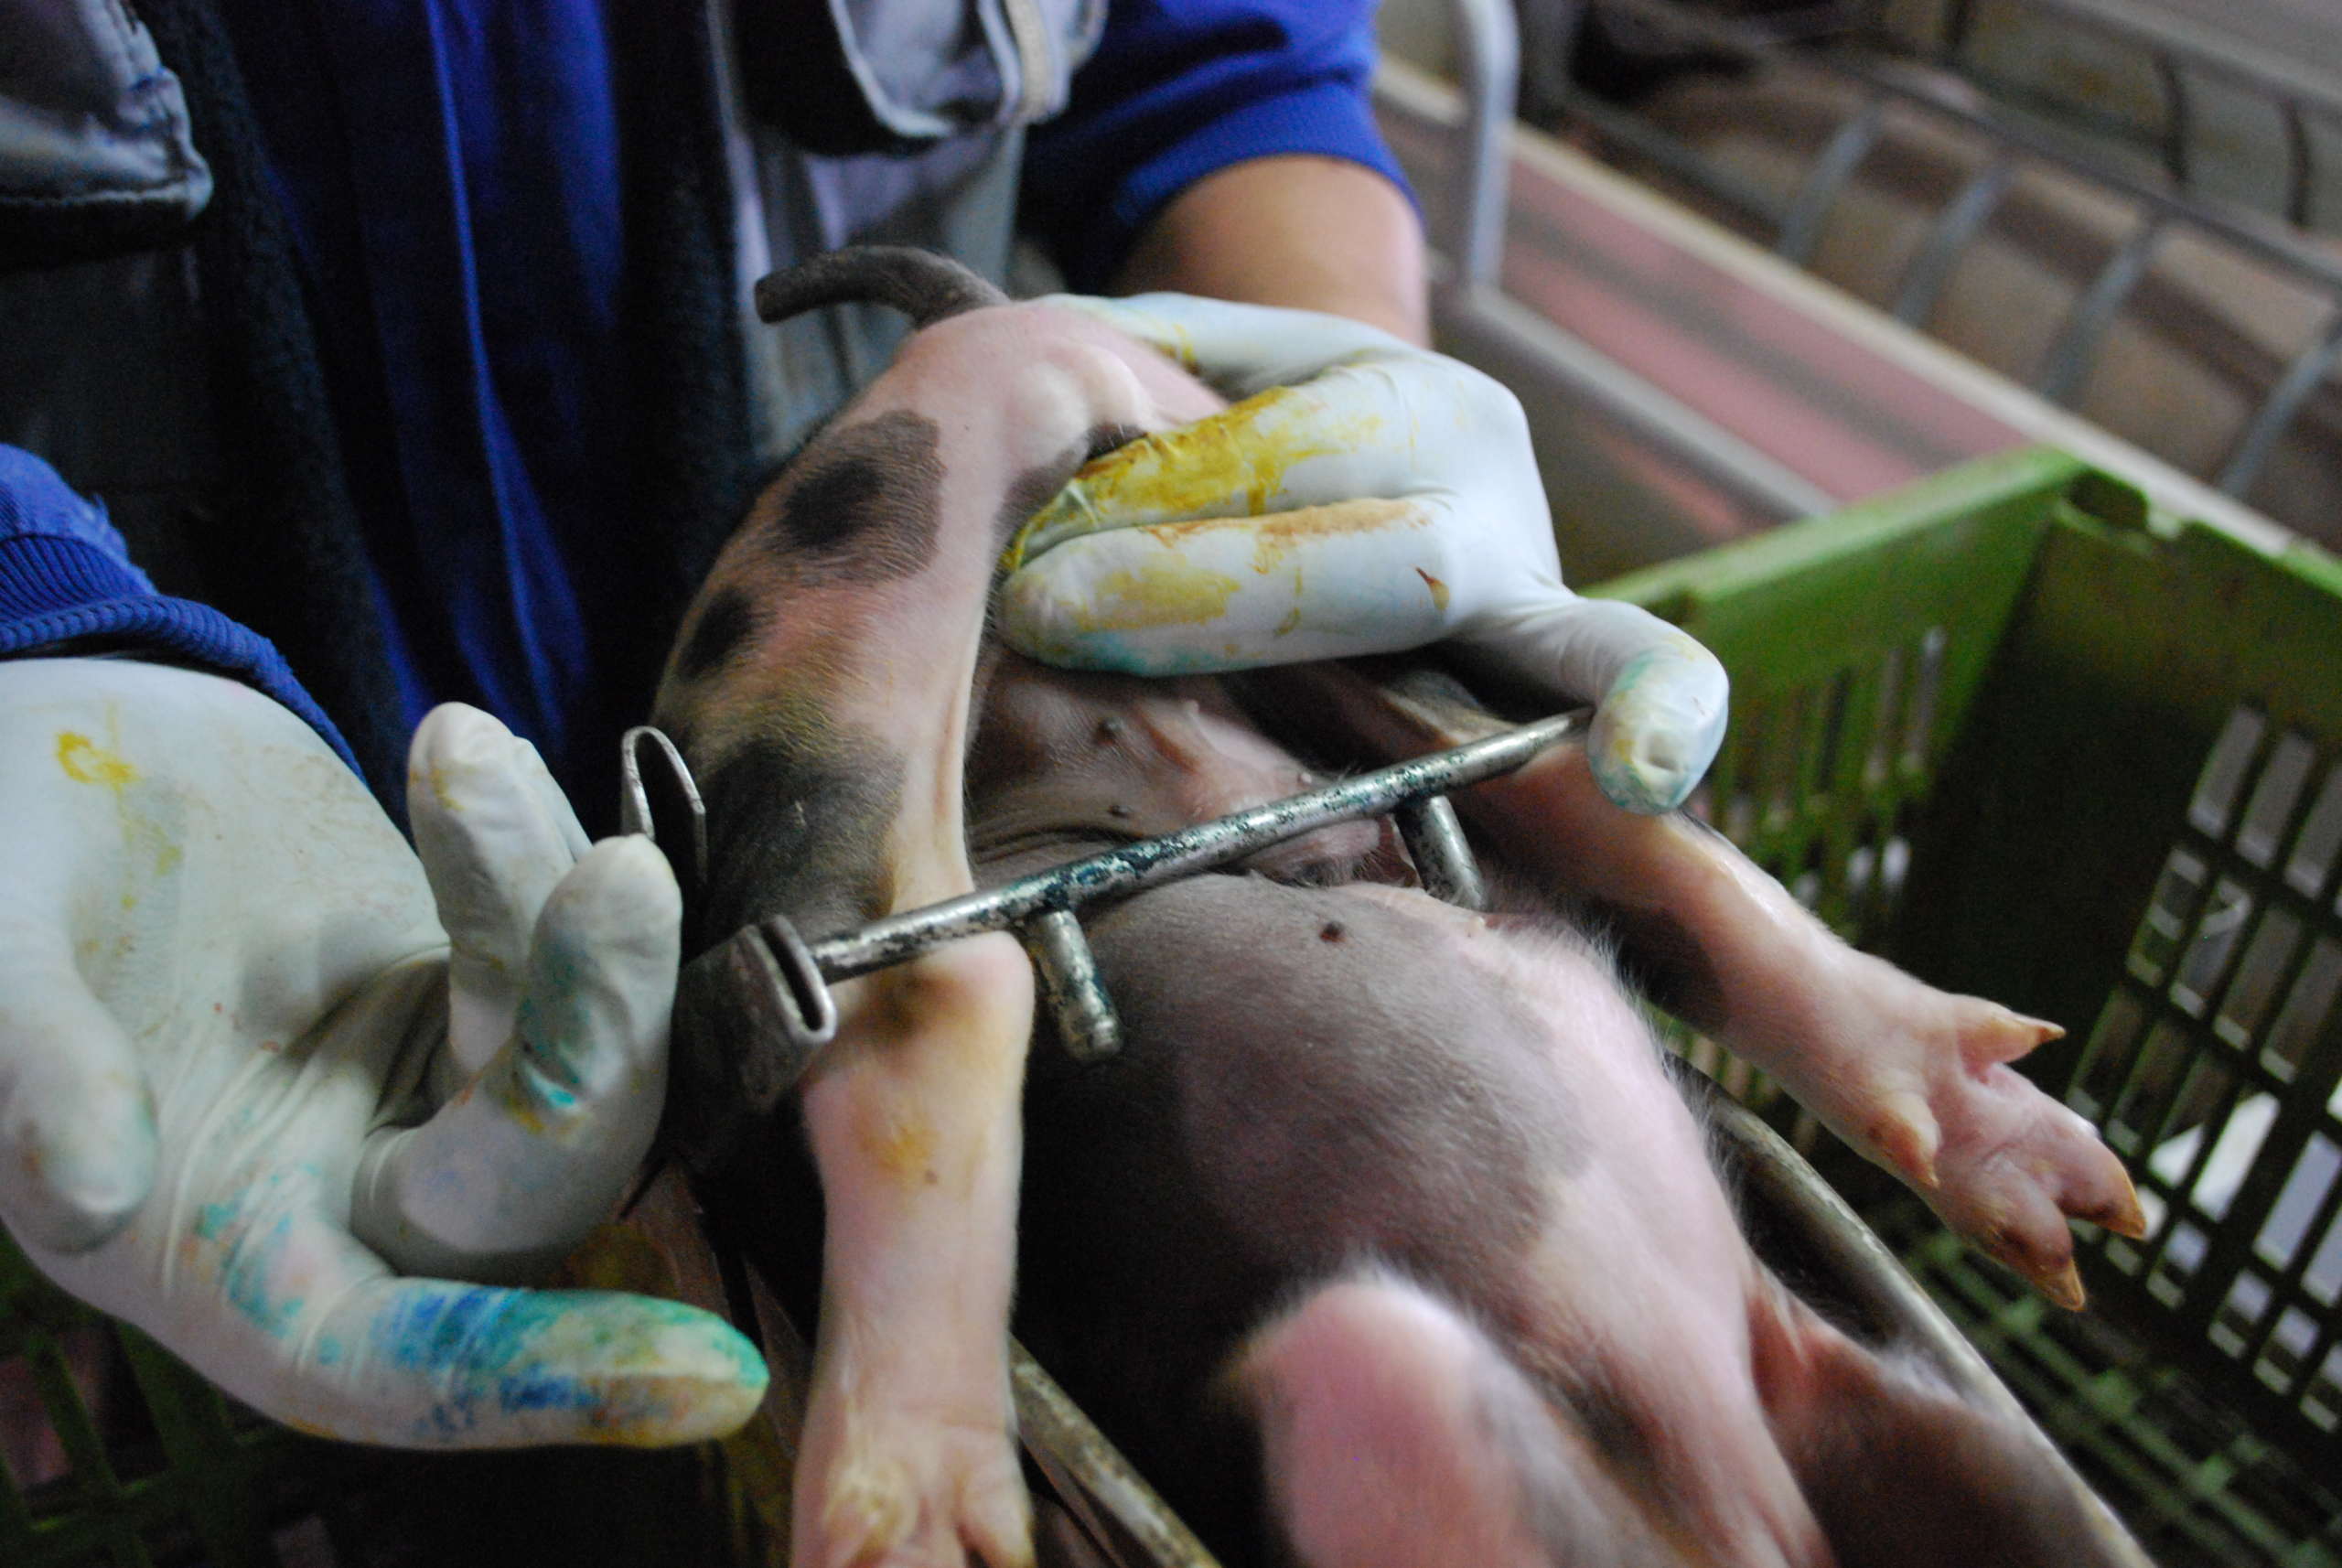 養豚で行われる 去勢 麻酔なし 畜産動物たちに希望を Hope For Animals 鶏 豚 牛などのアニマルウェルフェア ヴィーガンの情報サイト